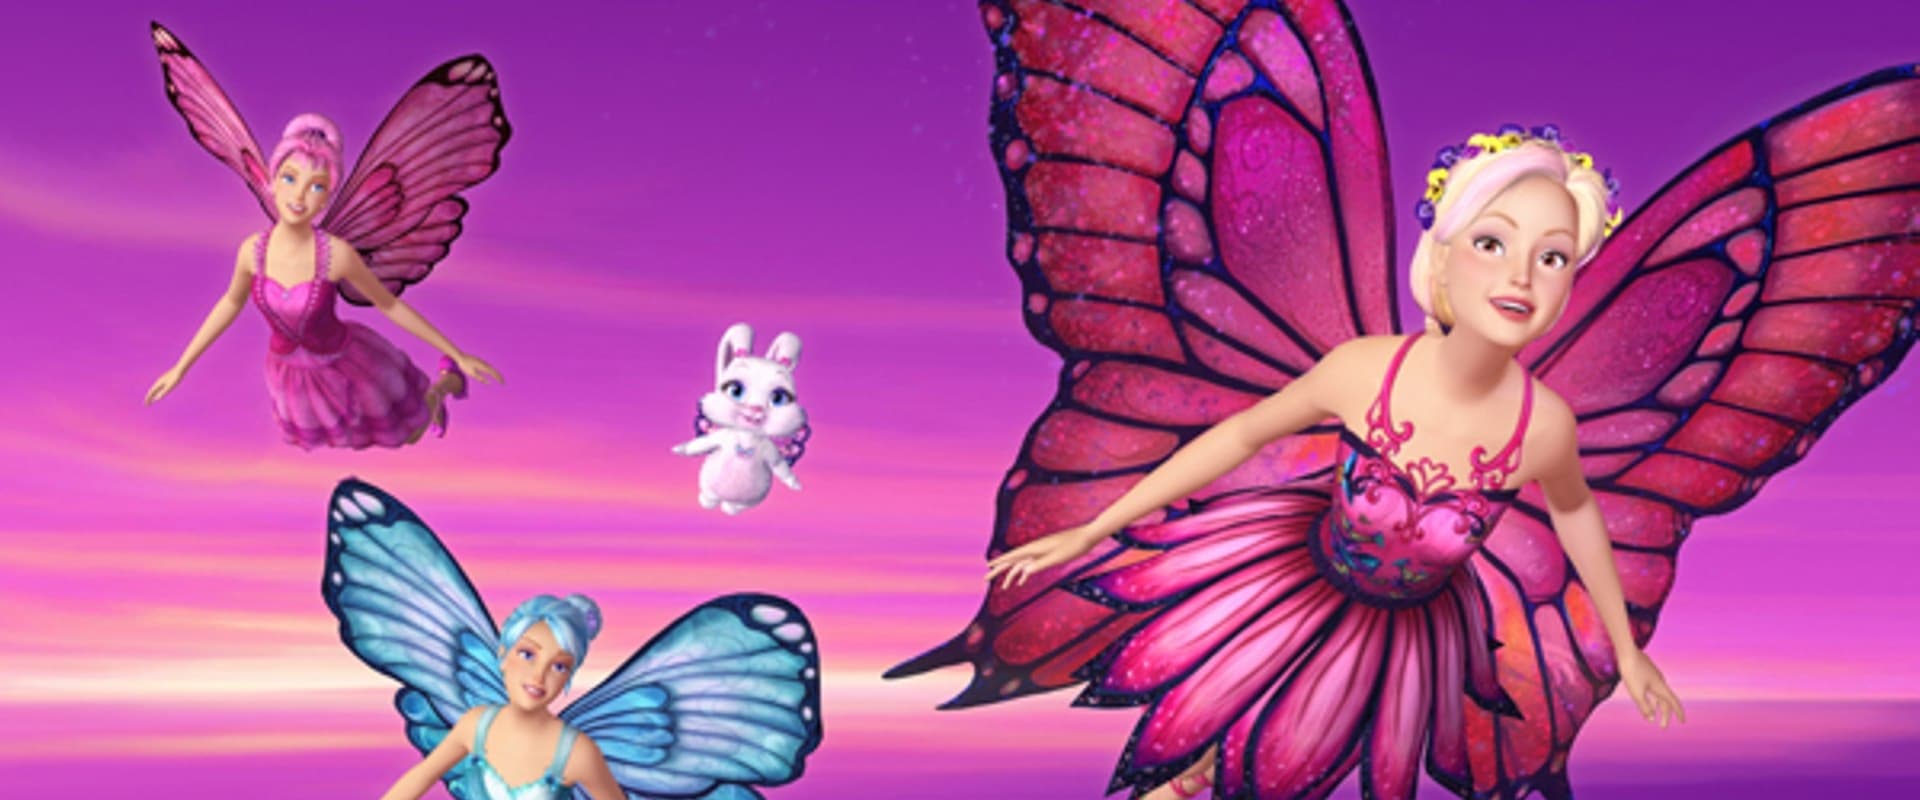 Barbie - Mariposa ja hänen Perhoskeiju-ystävänsä